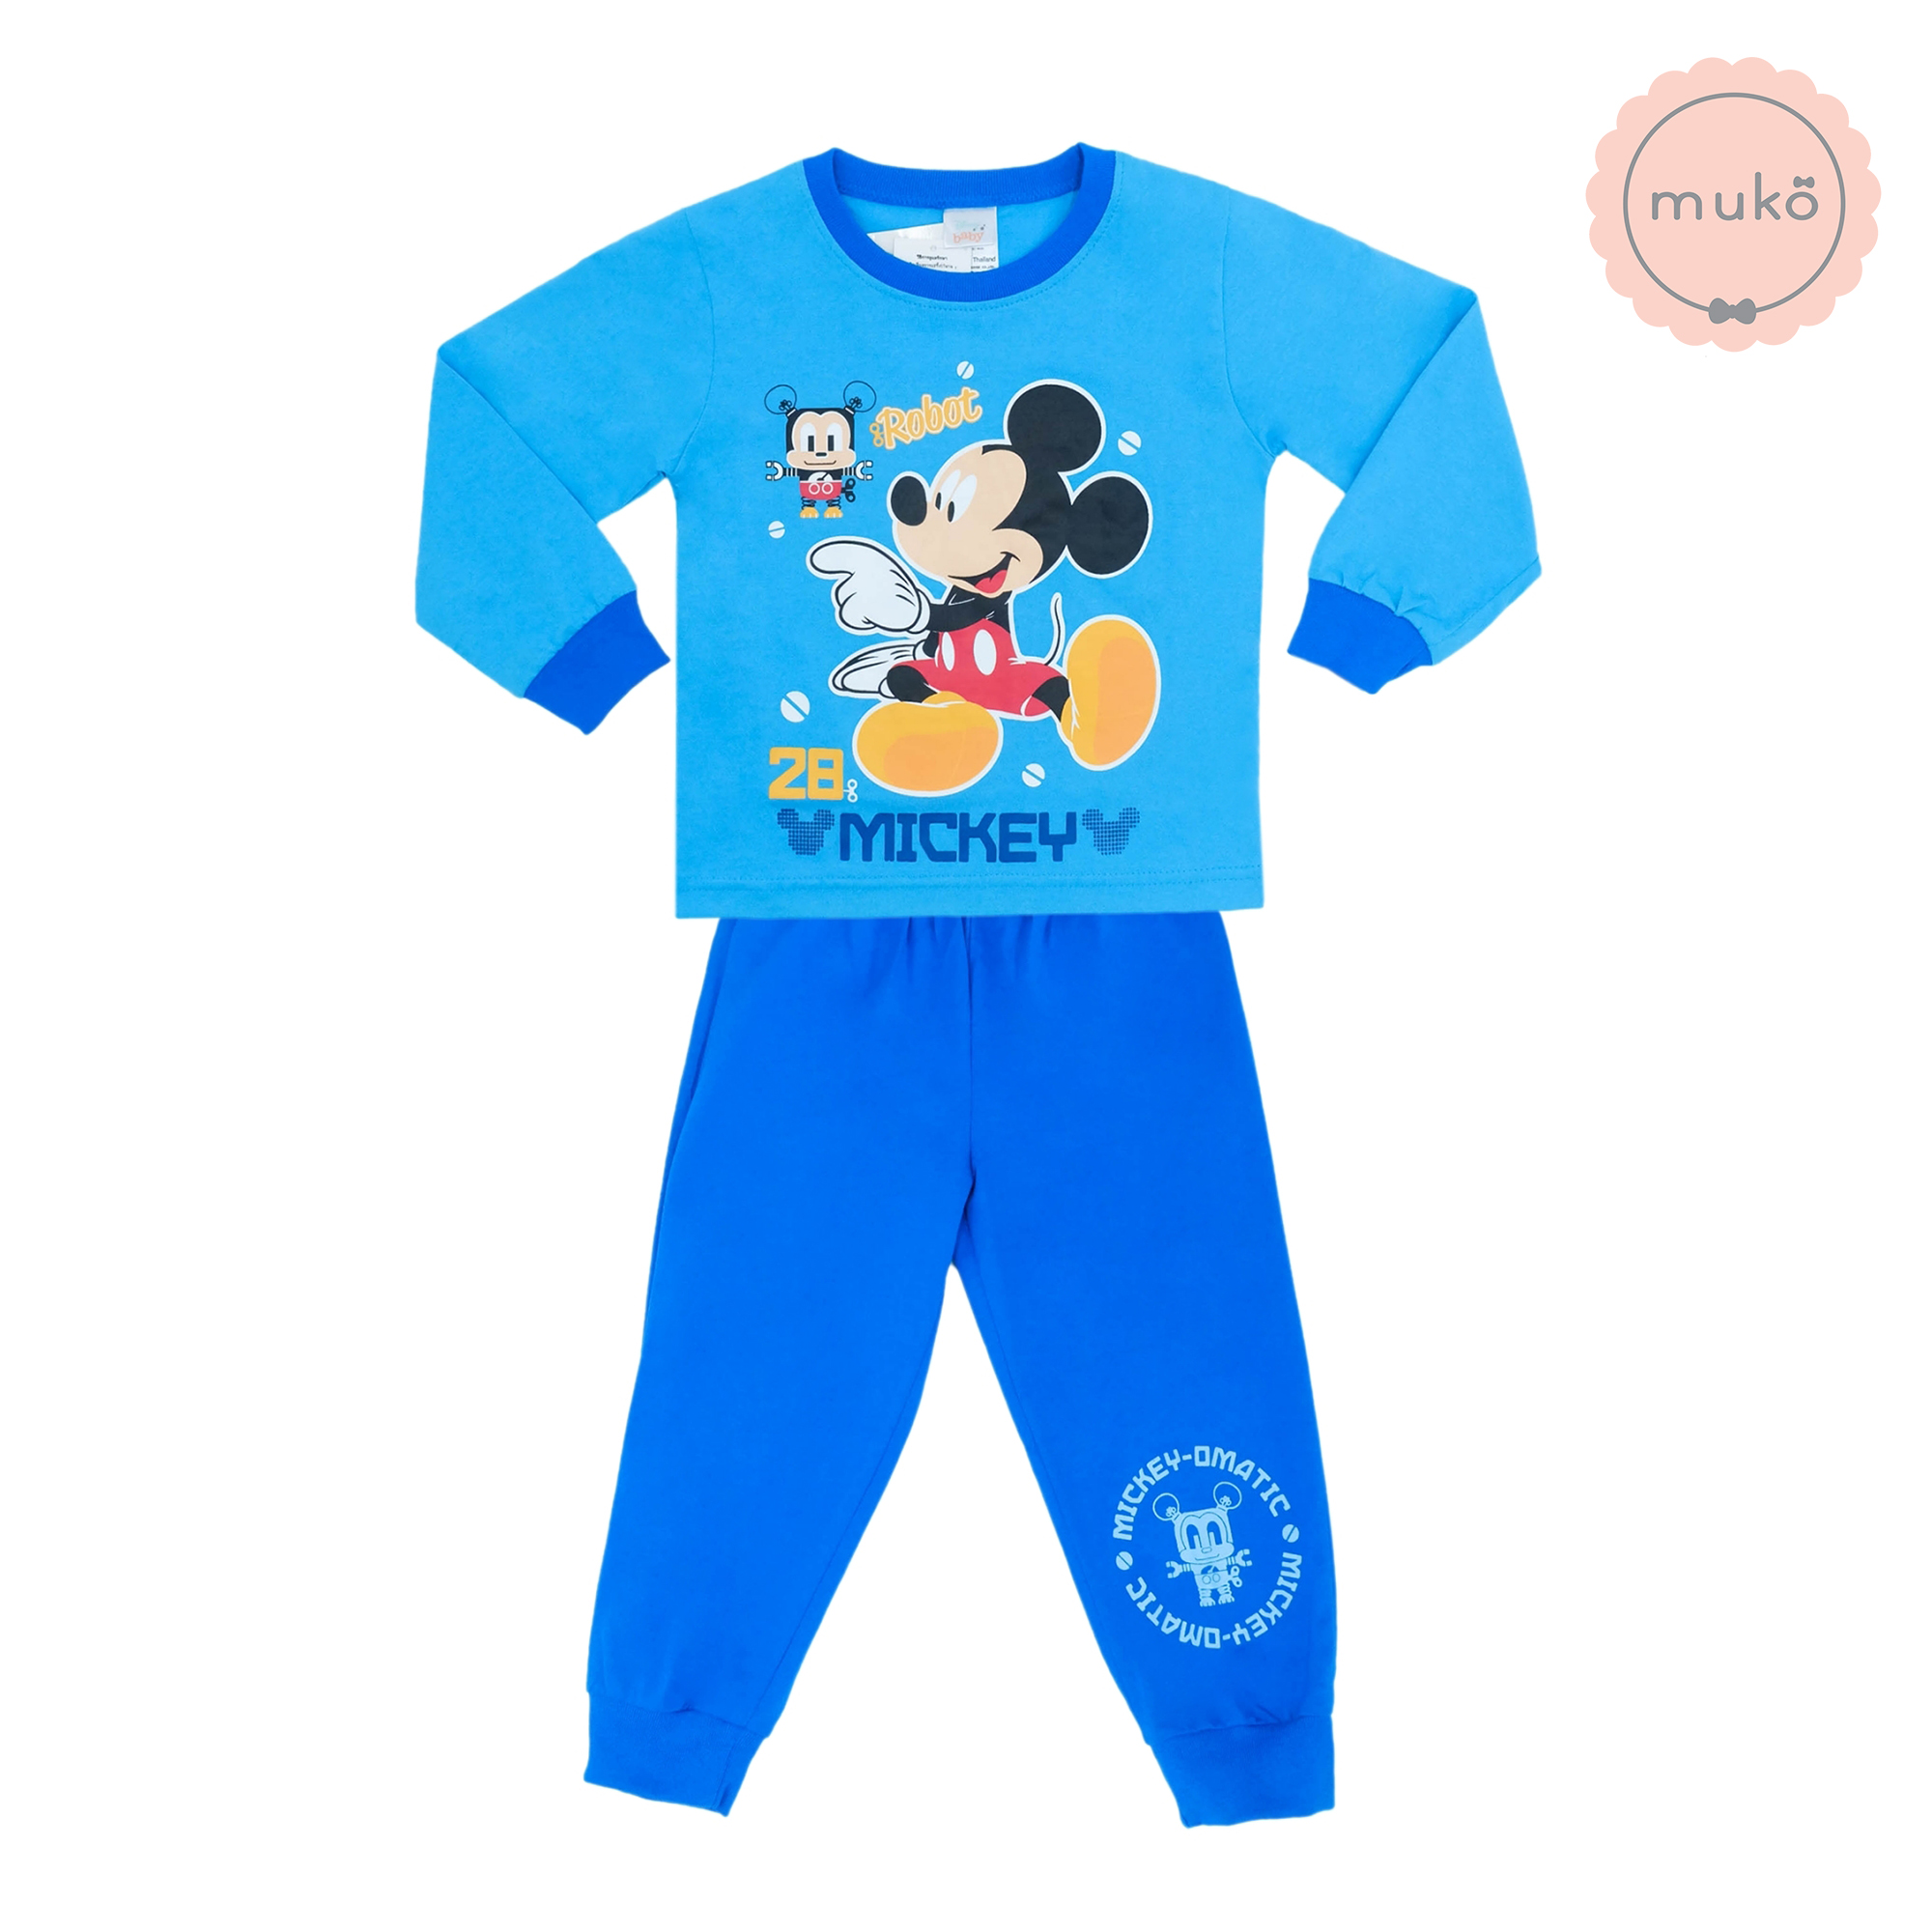 ชุดเด็ก 1-2 ขวบ แขนยาว-ขายาว (Size 2) DMK127-02-3-Blue 2 ลาย มิกกี้ เมาส์ Mickey Mouse สีฟ้า